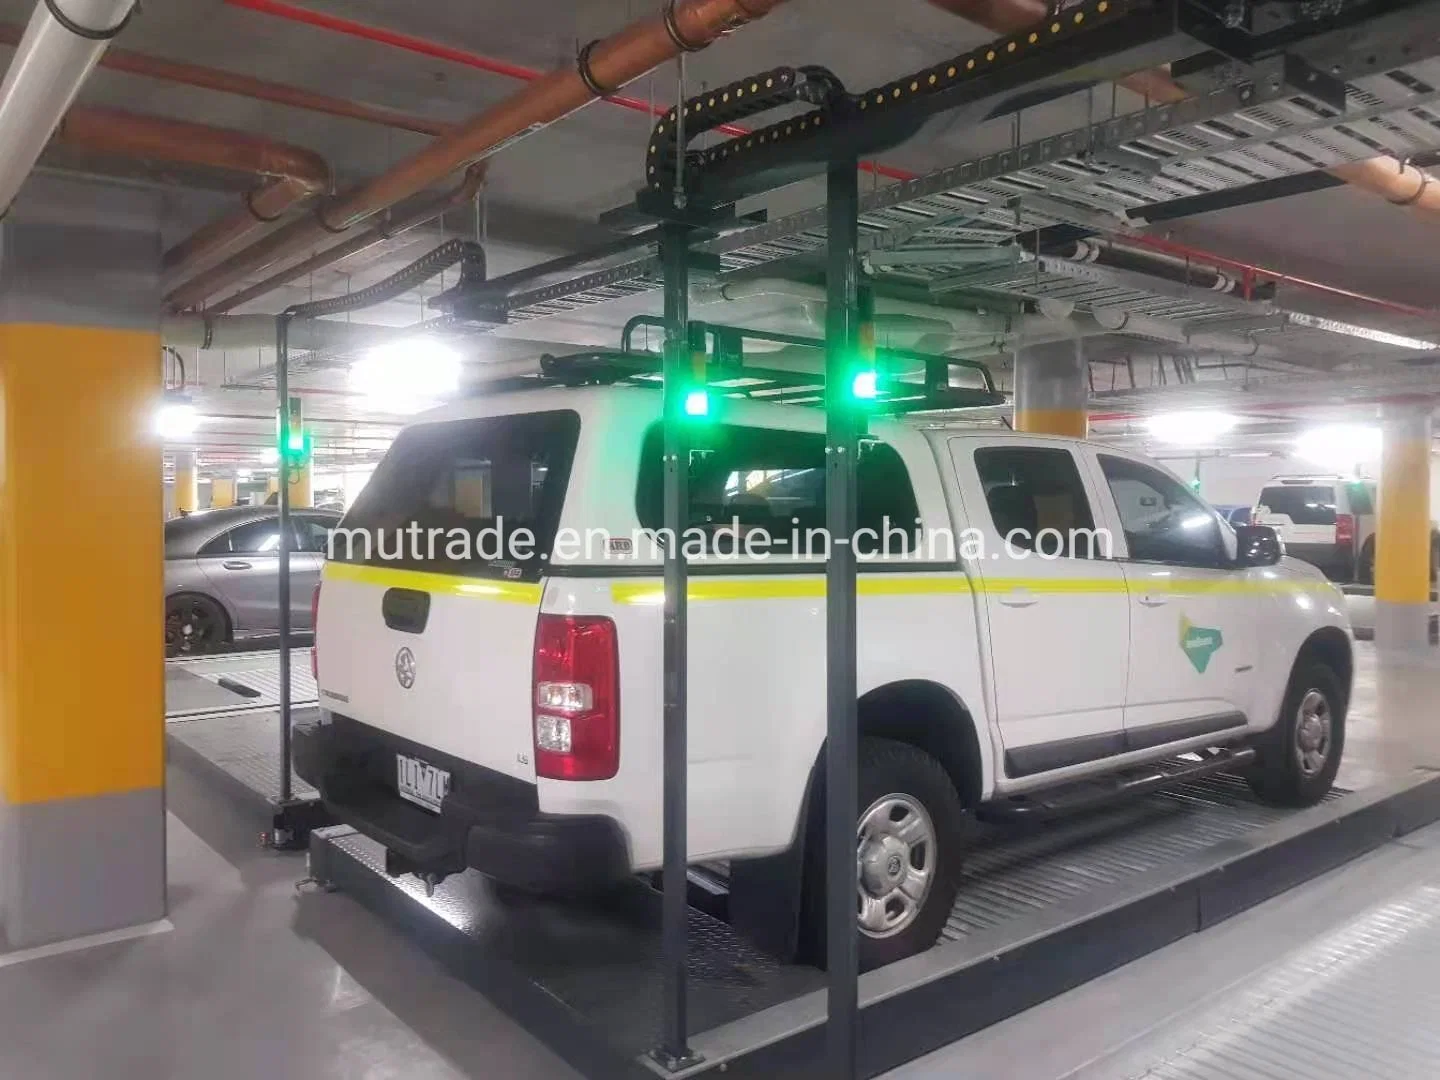 Гаражное оборудование автомобиля платформы Smart система парковки